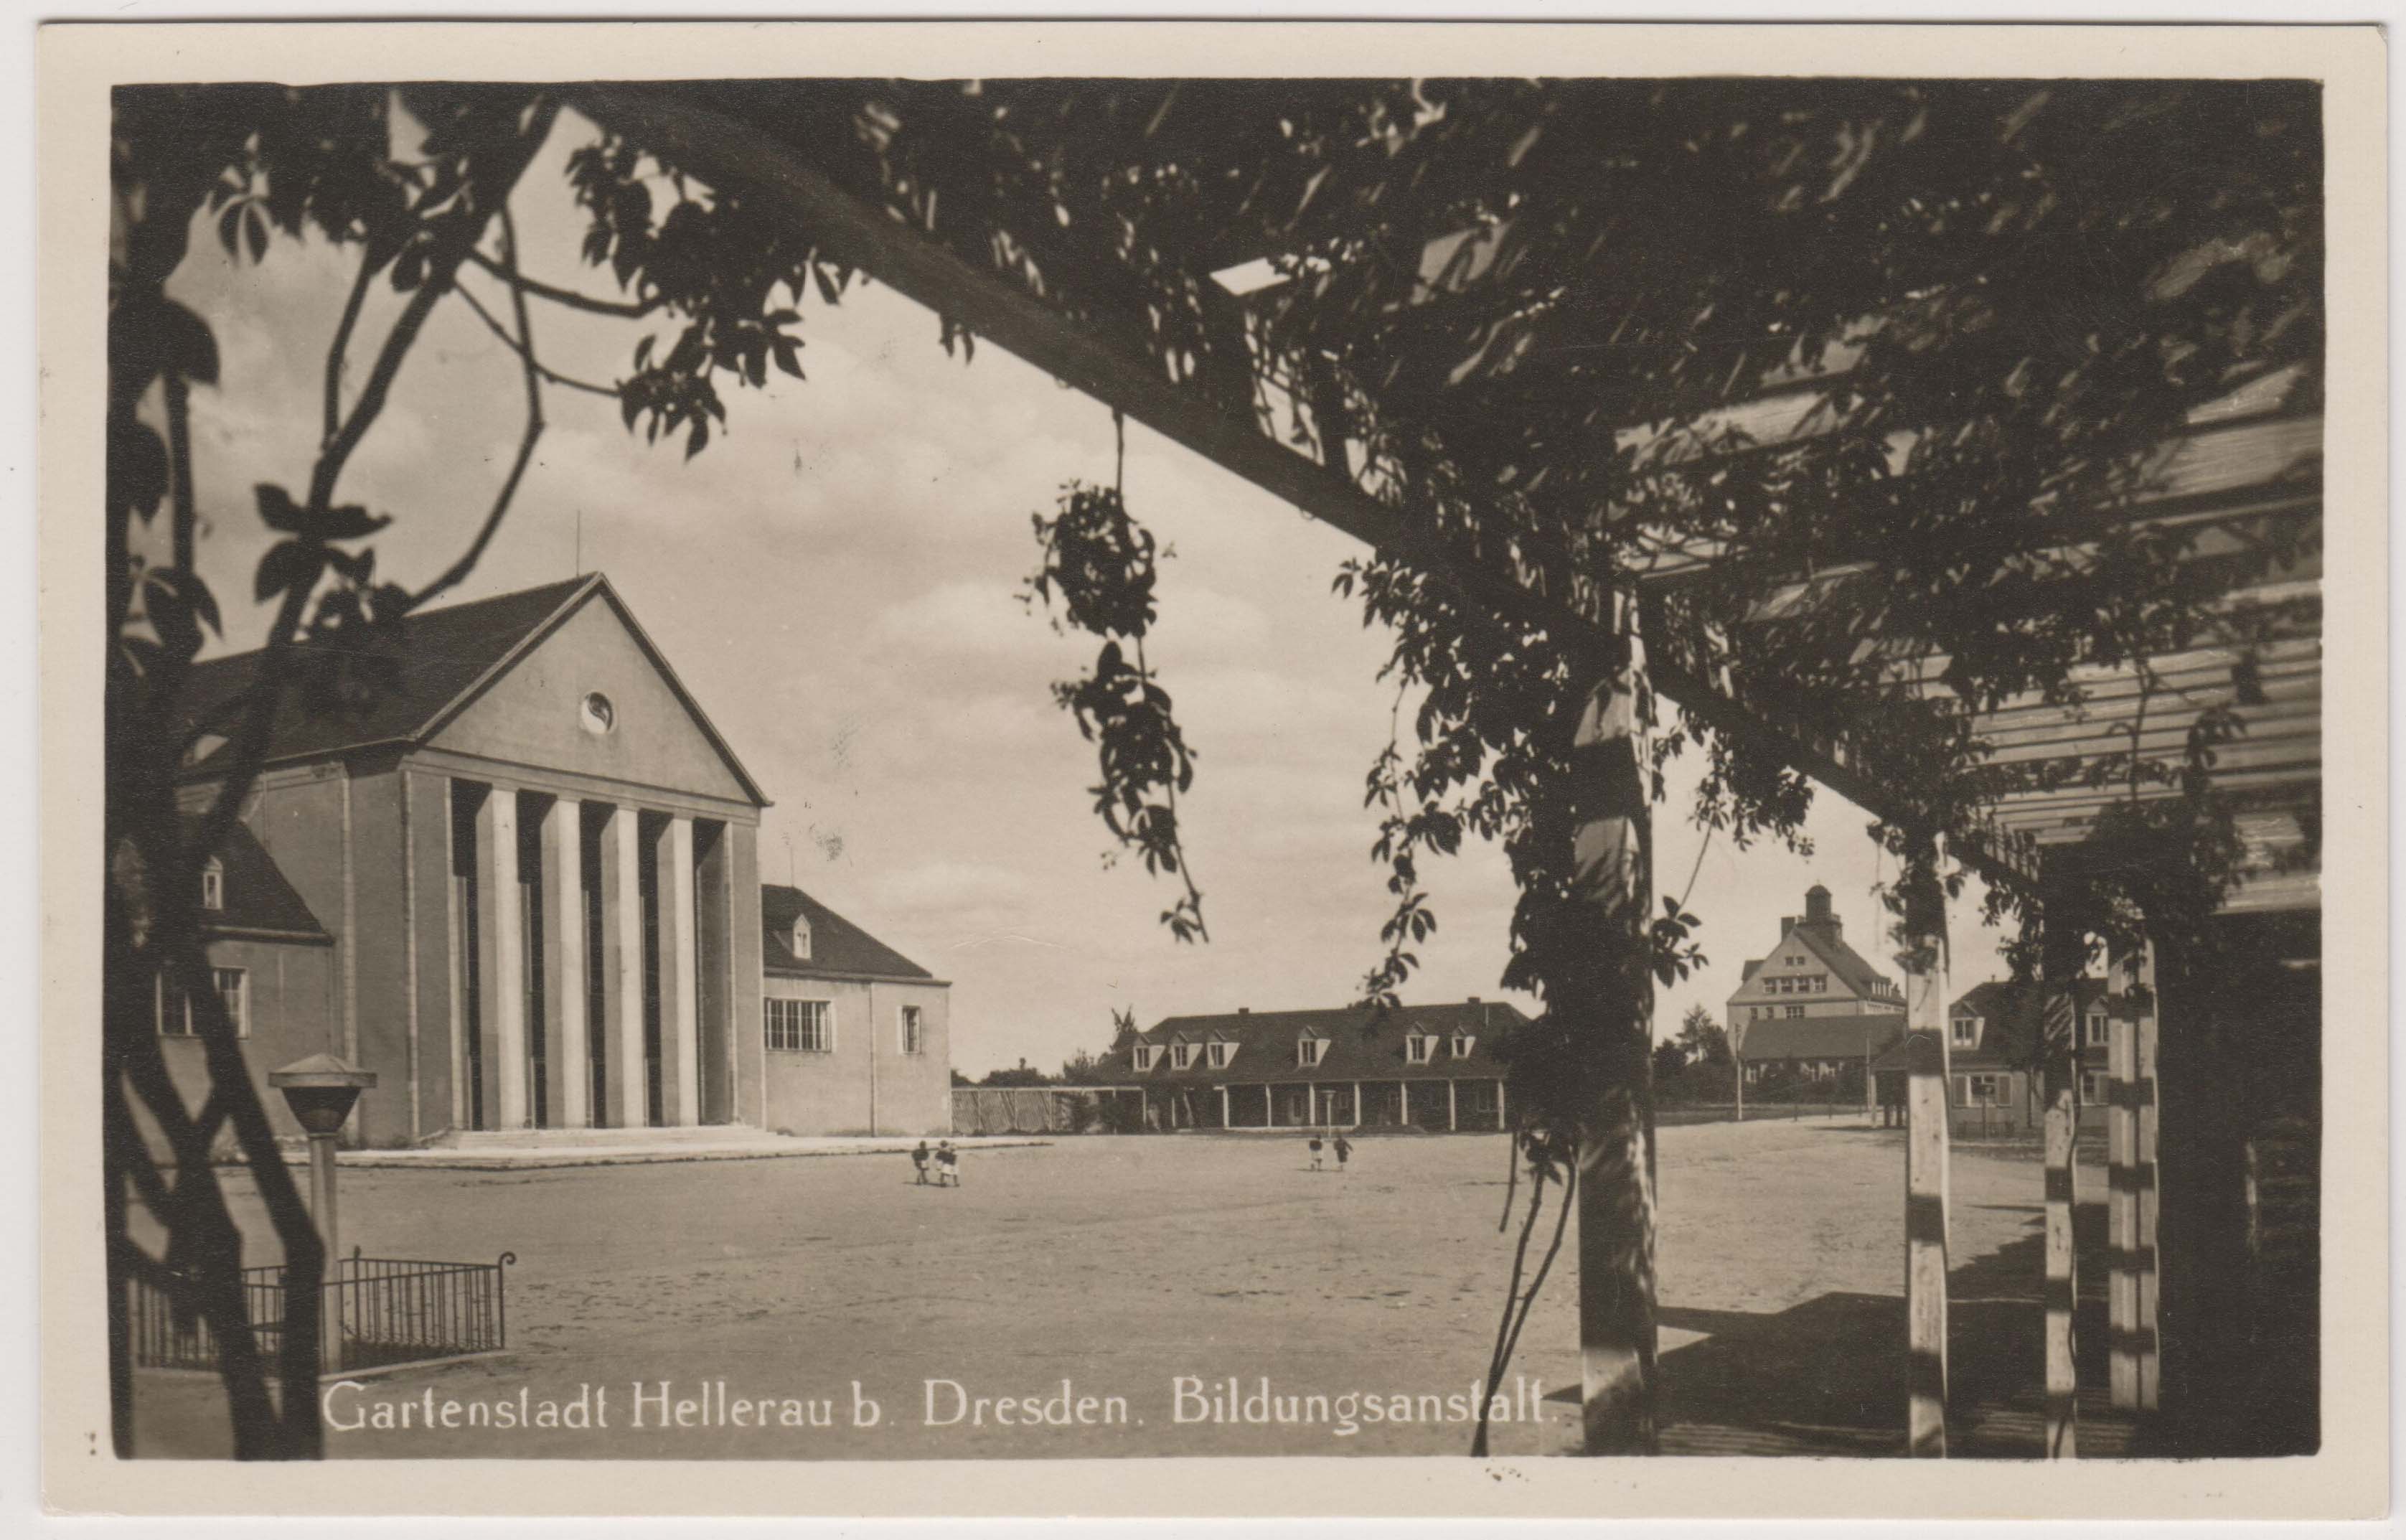 Postkarte mit dem Festspielhaus Hellerau